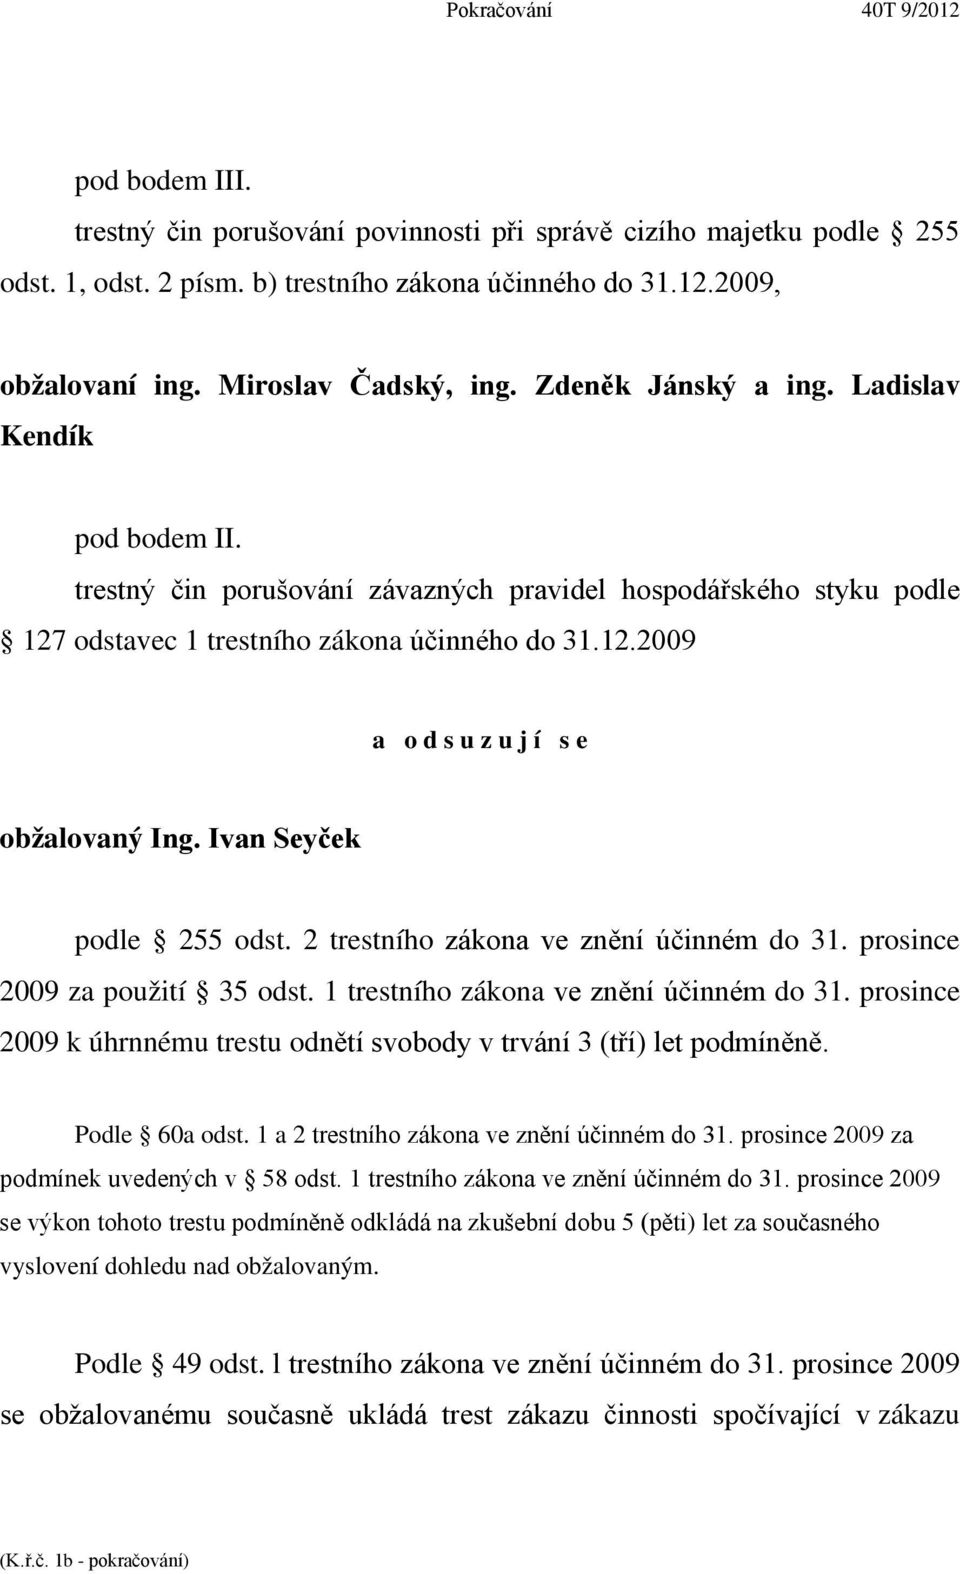 Ivan Seyček podle 255 odst. 2 trestního zákona ve znění účinném do 31. prosince 2009 za použití 35 odst. 1 trestního zákona ve znění účinném do 31.